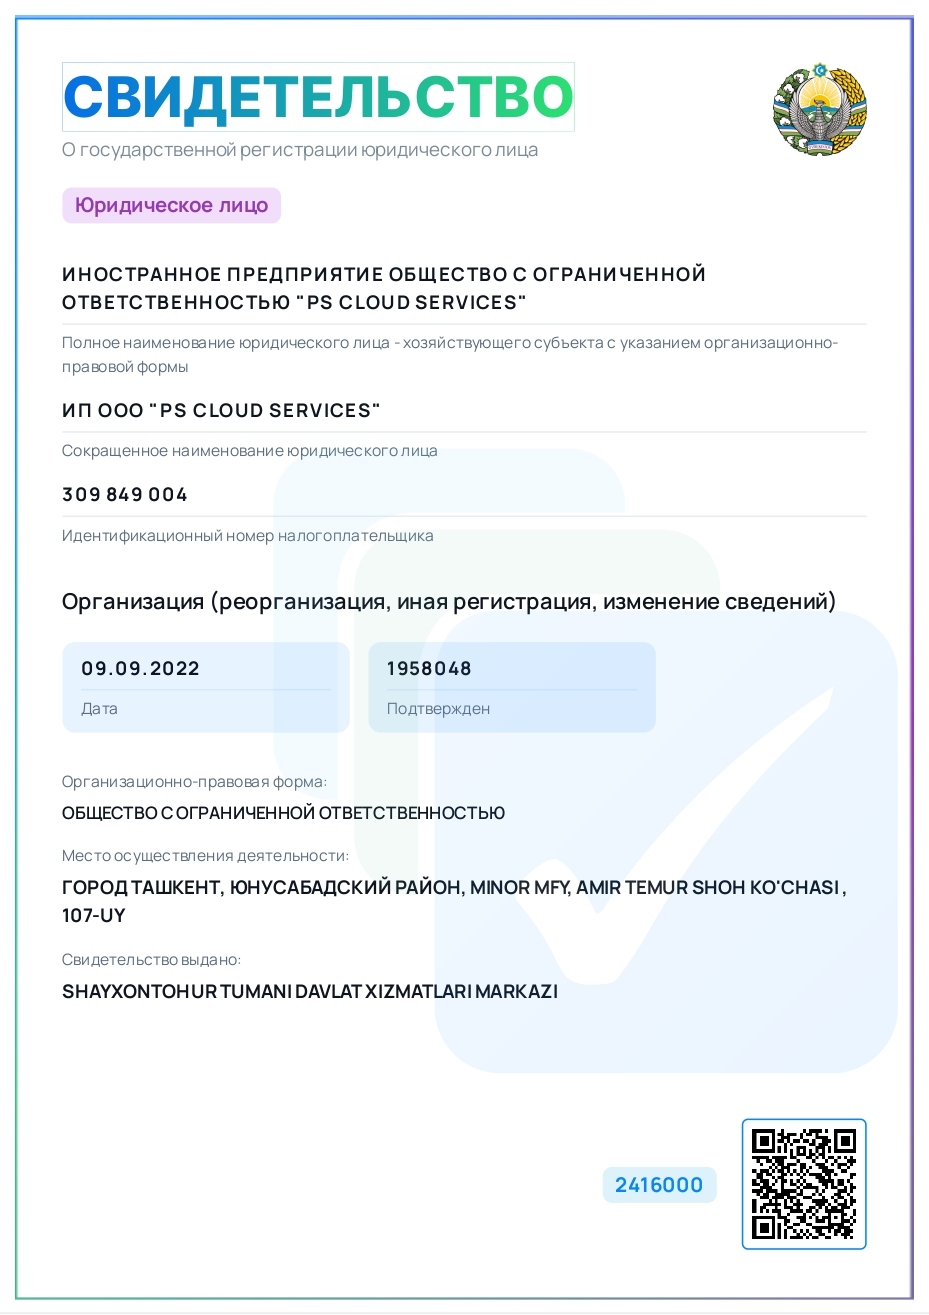 свидетельство о государственной регистрации юридического лица PS Cloud Services на русском языке